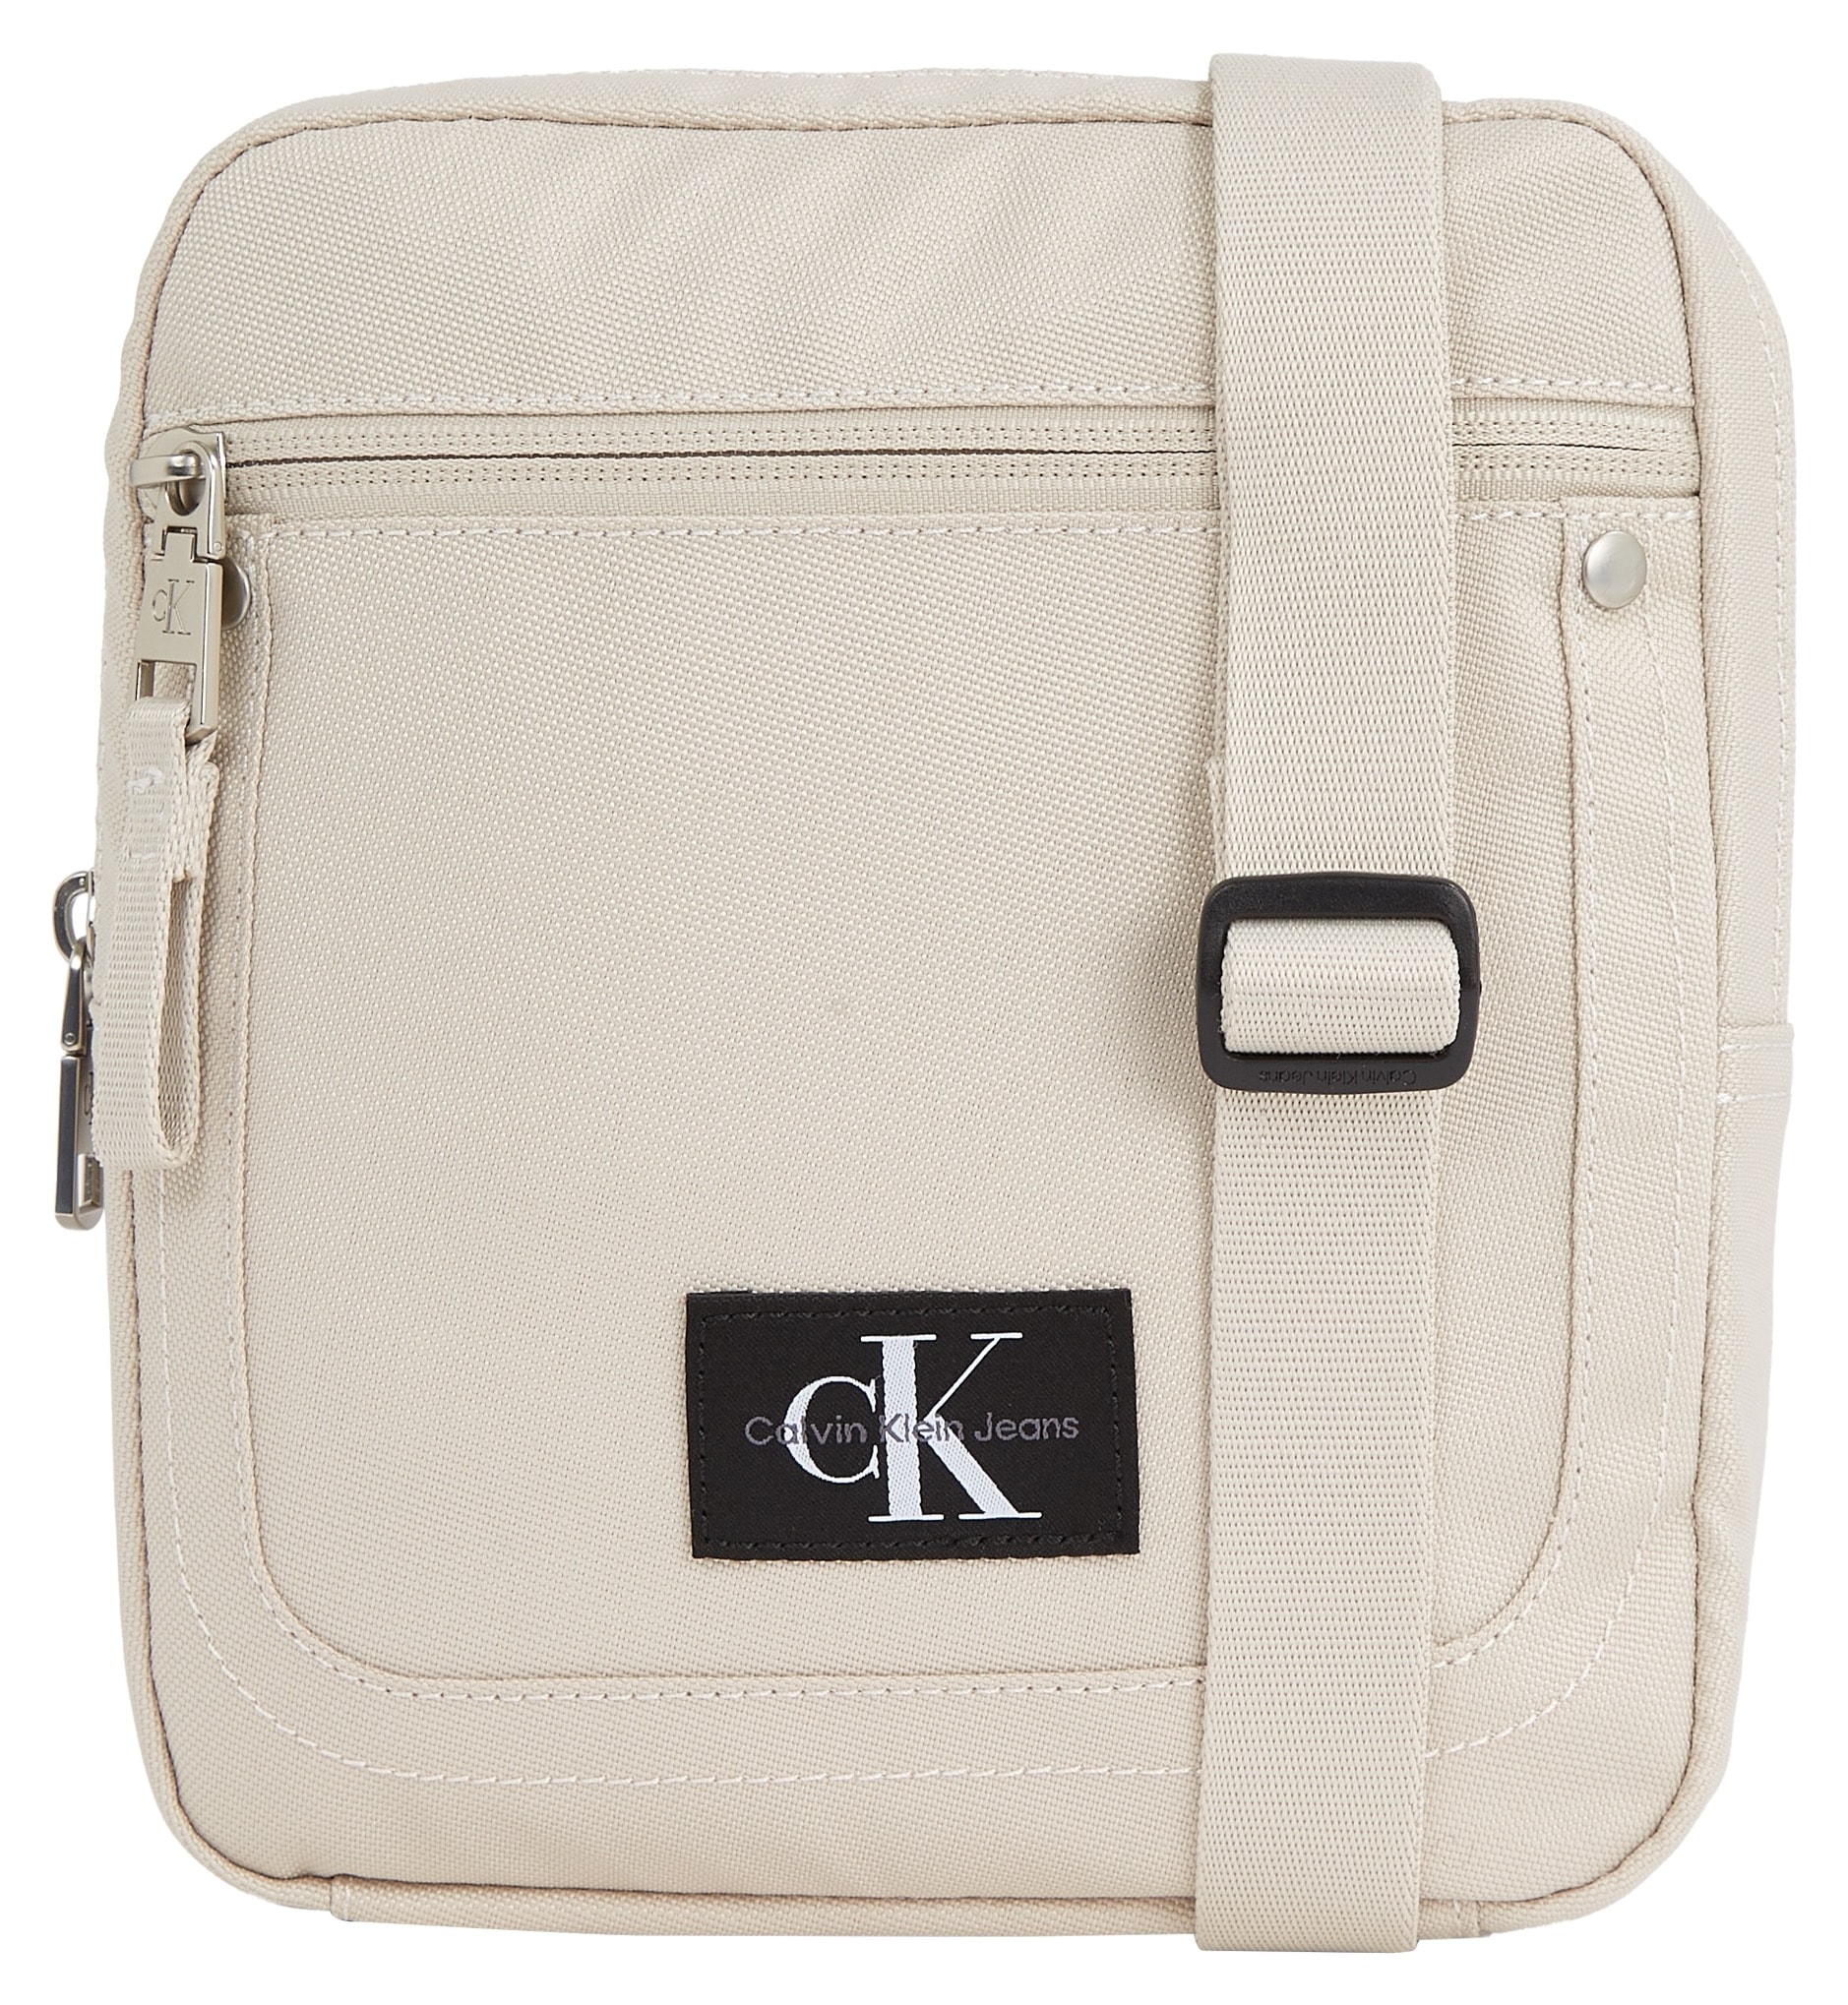 Calvin Klein Jeans | in schlichtem Mini Bag REPORTER18 online BAUR ESSENTIALS Design W«, »SPORT kaufen